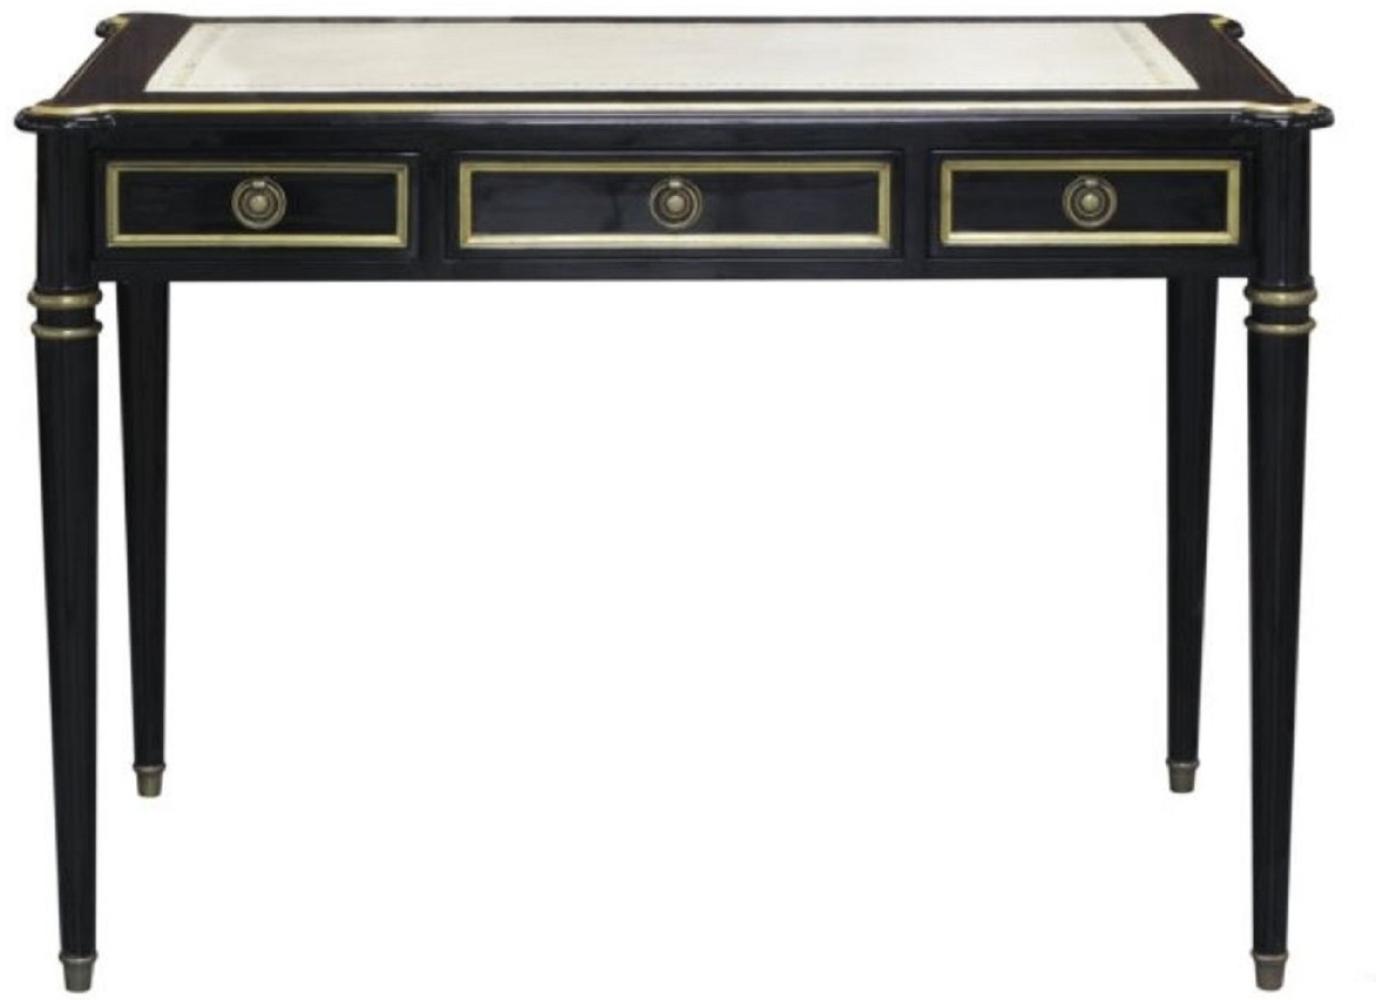 Casa Padrino Barock Schreibtisch mit 3 Schubladen Schwarz / Weiß / Gold 108 x 61 x H. 77 cm - Barock Büromöbel Bild 1